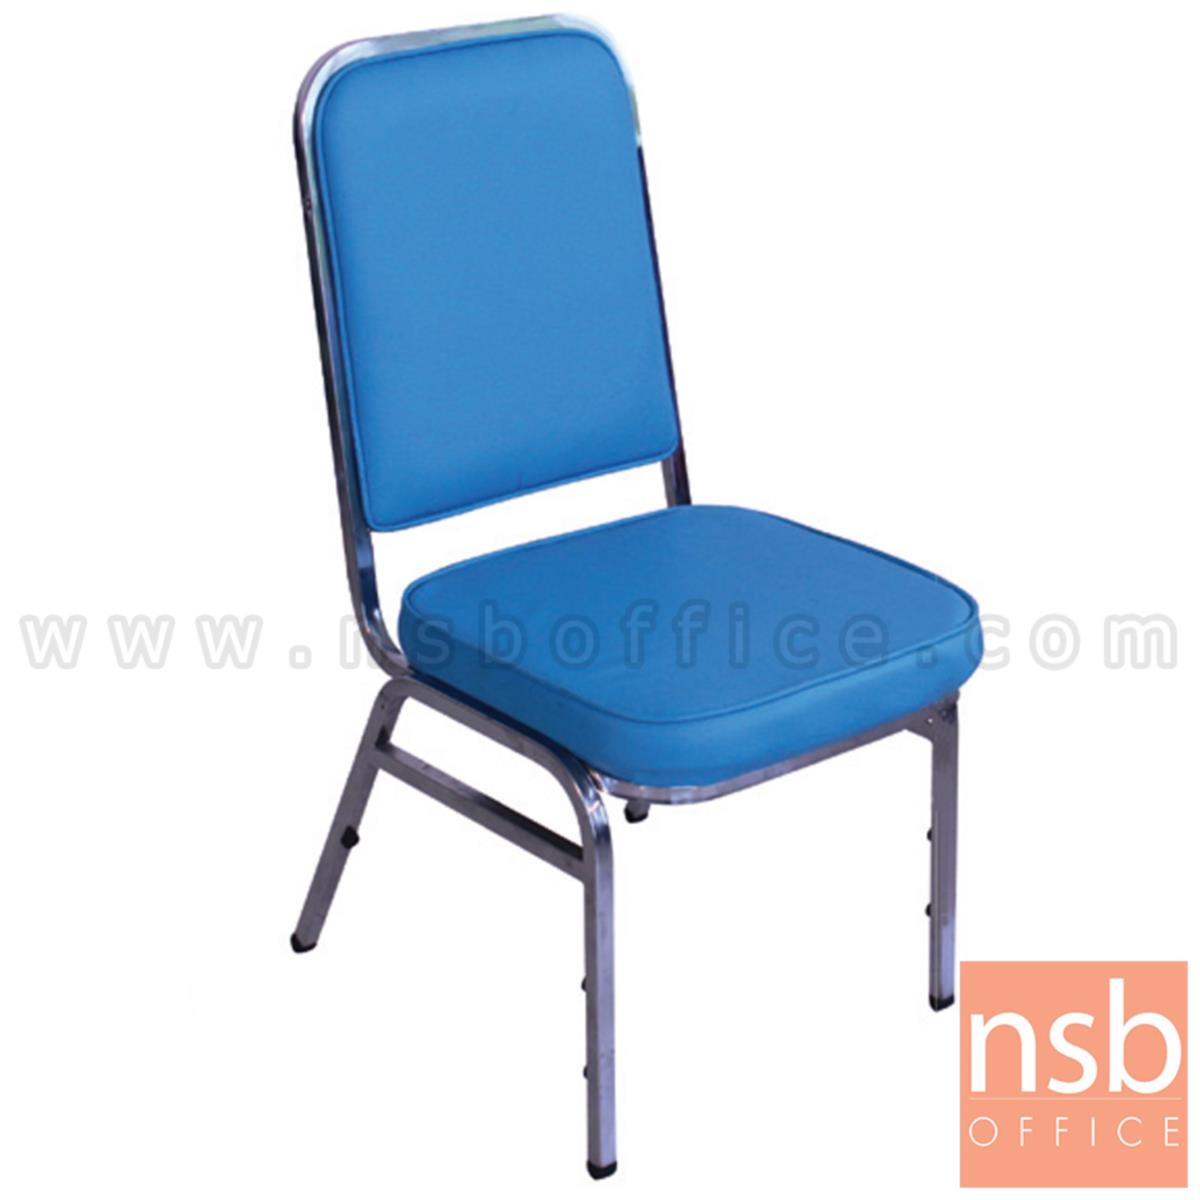 เก้าอี้อเนกประสงค์จัดเลี้ยง รุ่น Beatrix (บรีทริกซ์) ขนาด 90H cm. ขาเหล็ก 